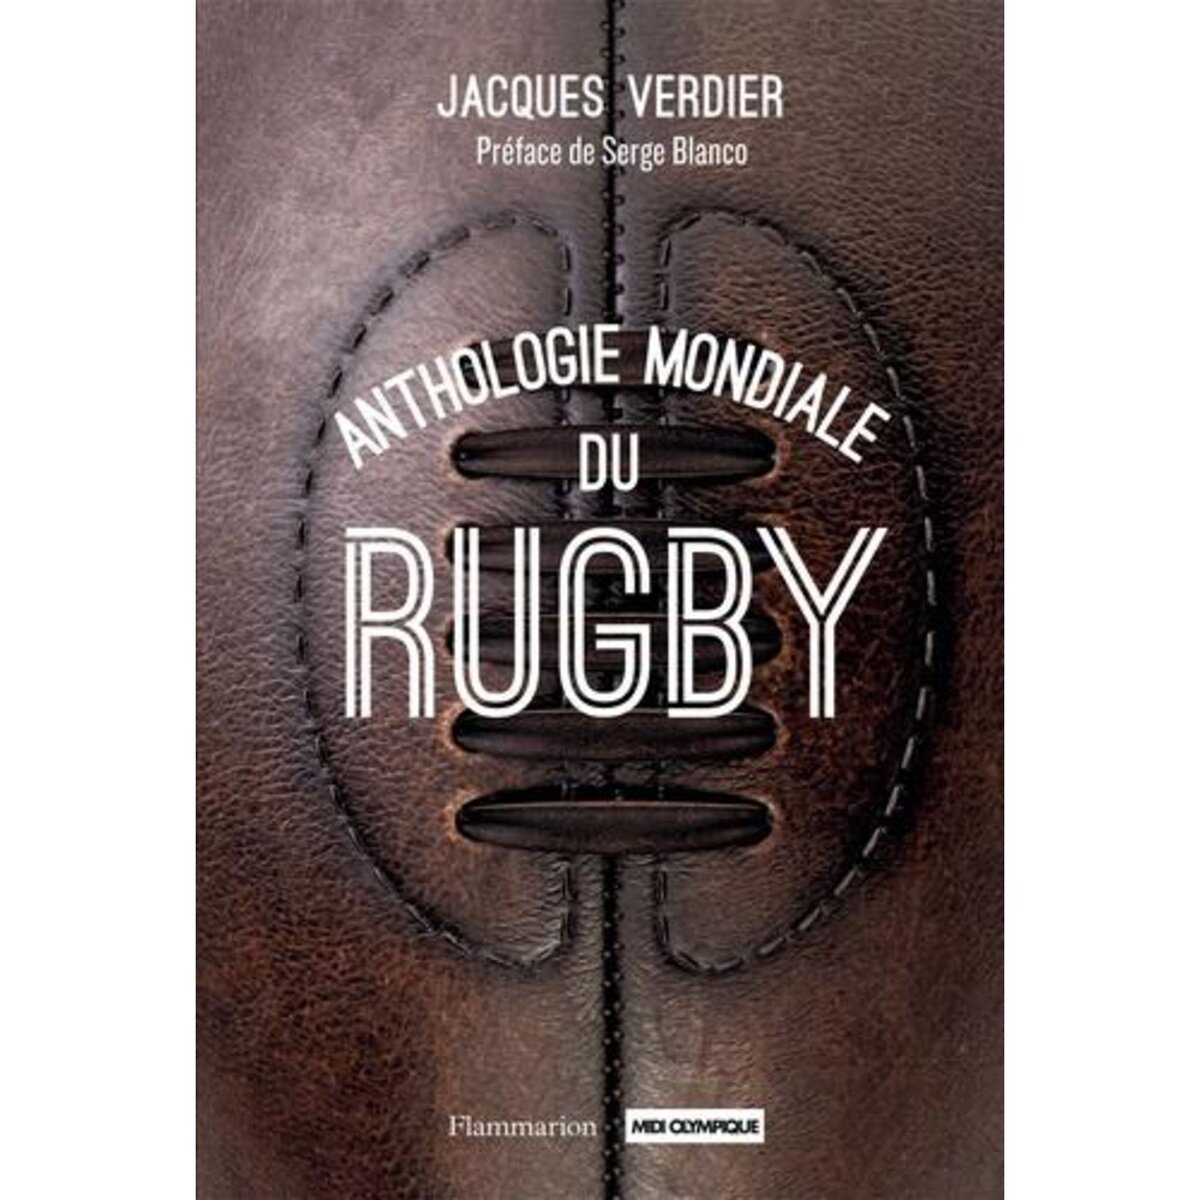  ANTHOLOGIE MONDIALE DU RUGBY, Verdier Jacques